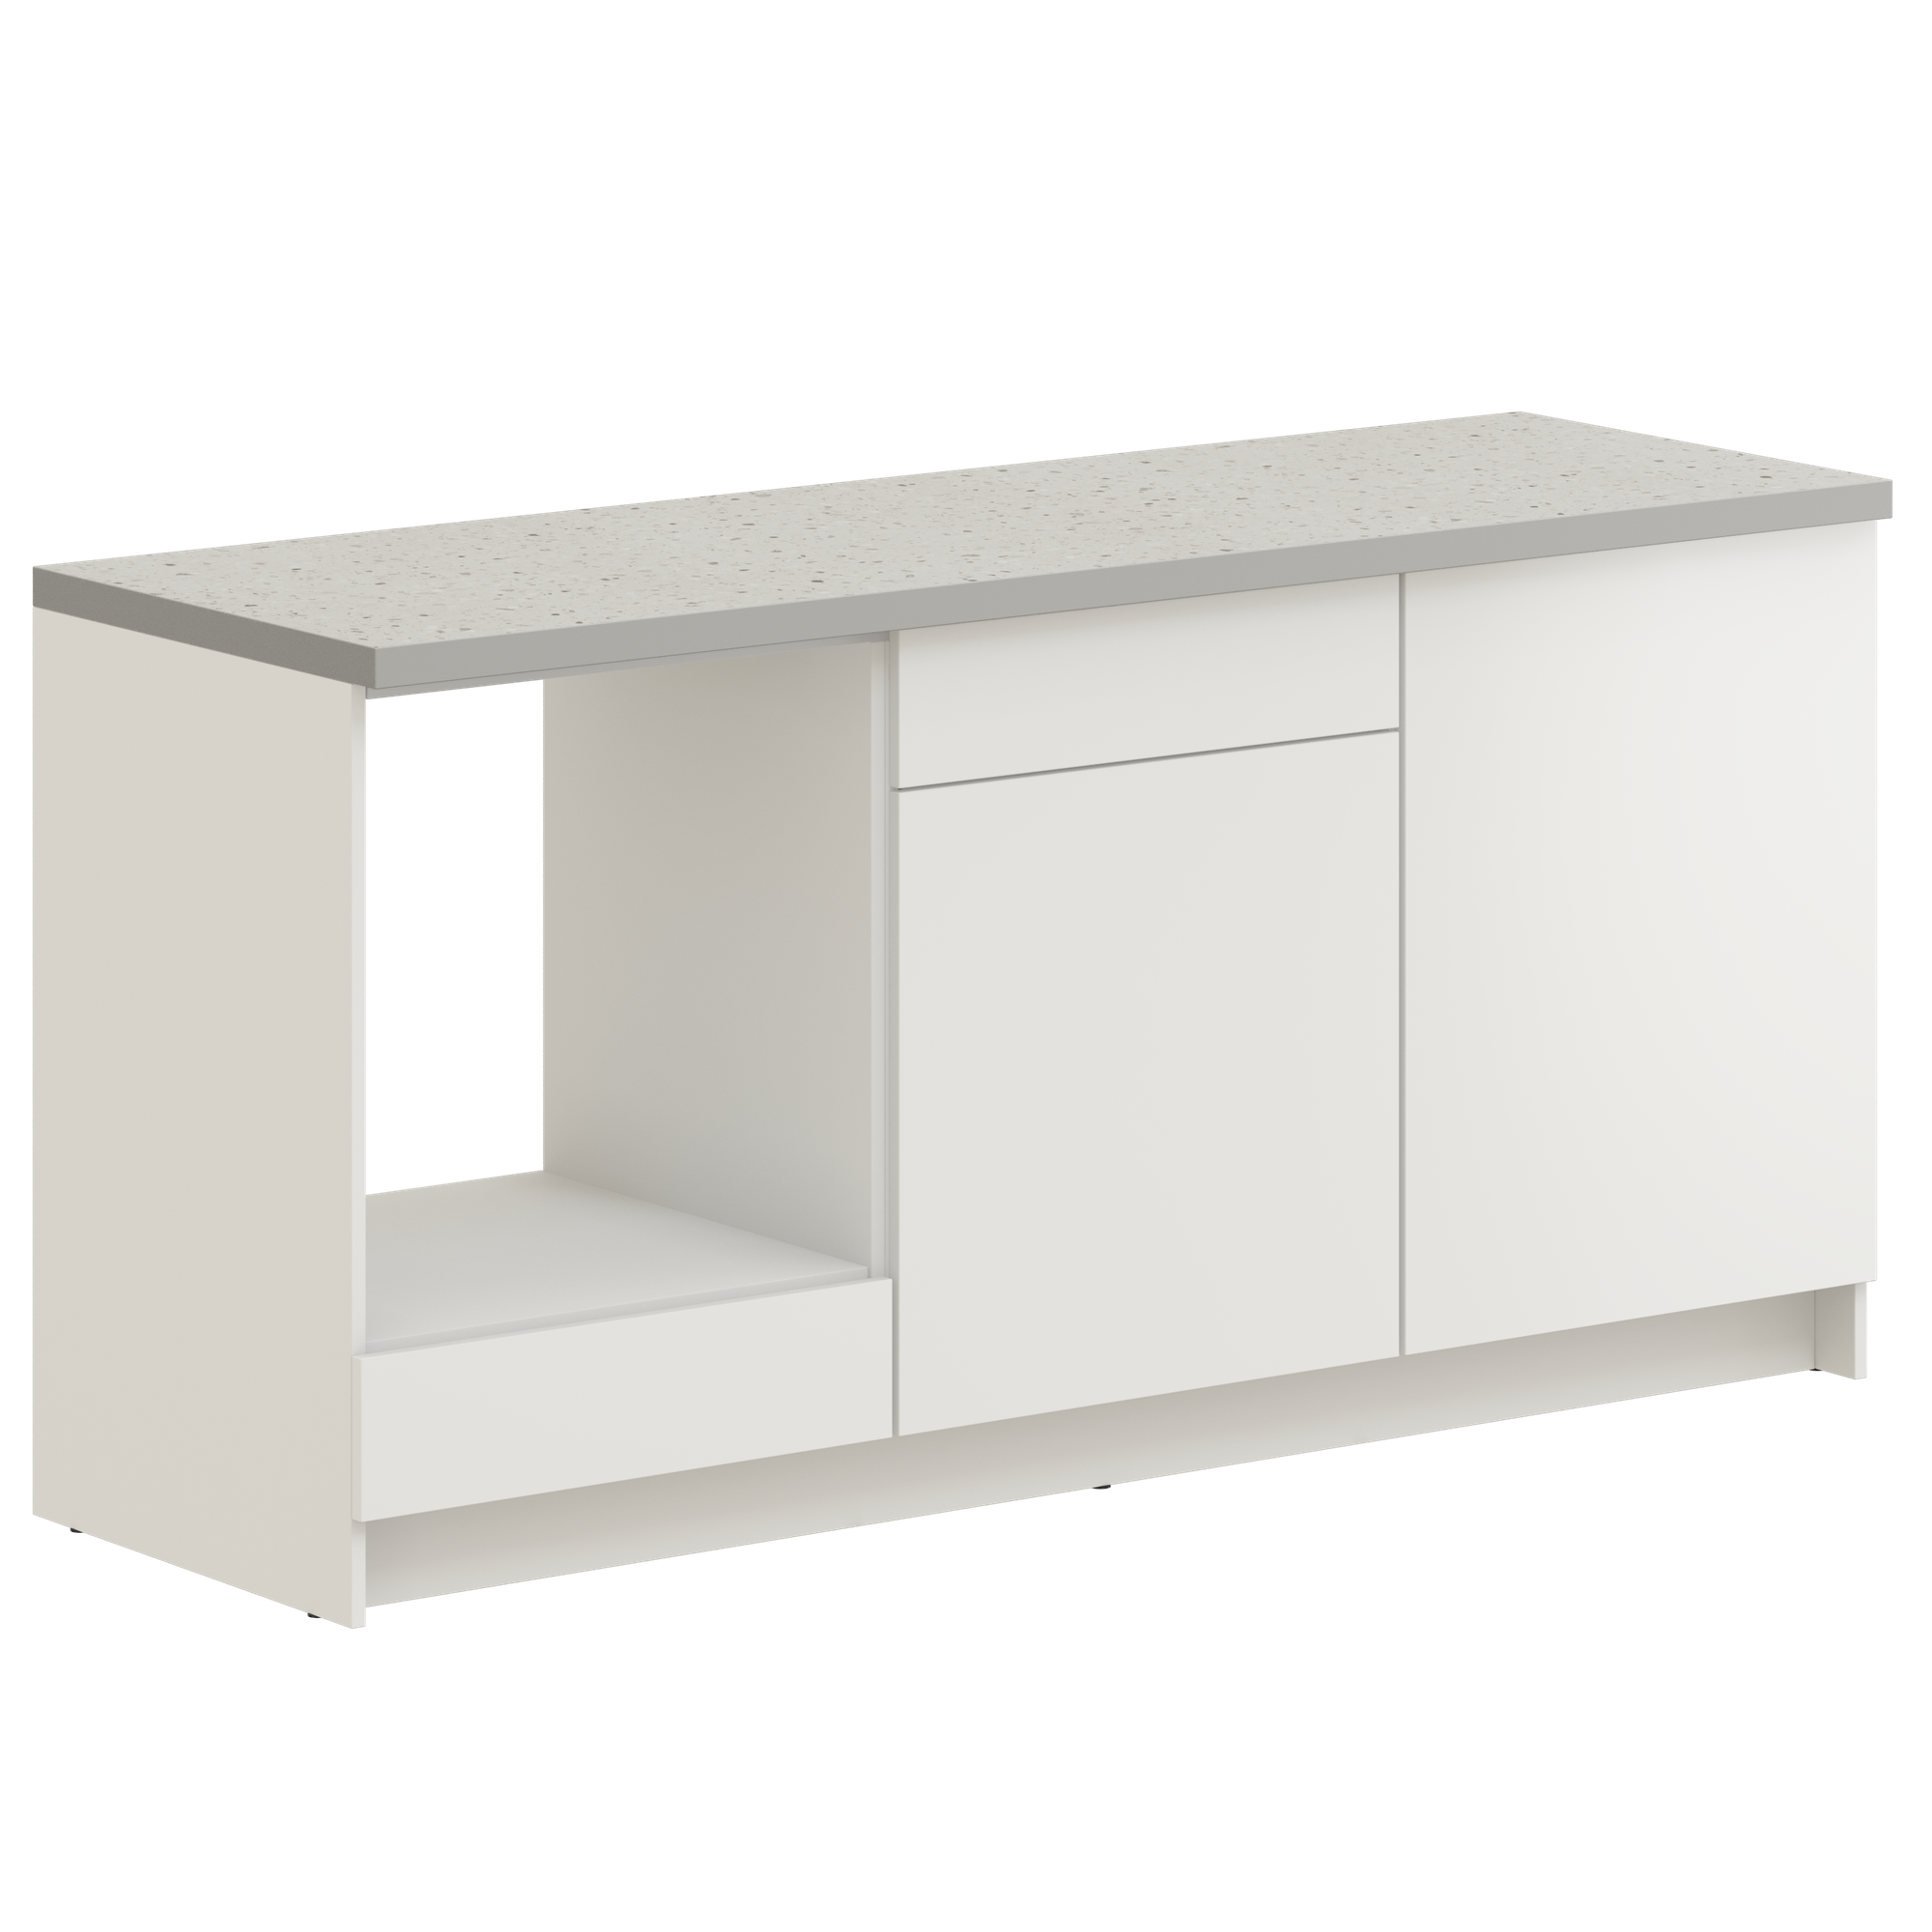 Кухонный модуль напольная тумба Pragma Elinda с дверцами, выдвижным ящиком, под встраиваемую духовку, ШхГхВ 181х60х91 см, со столешницей, ЛДСП, белый